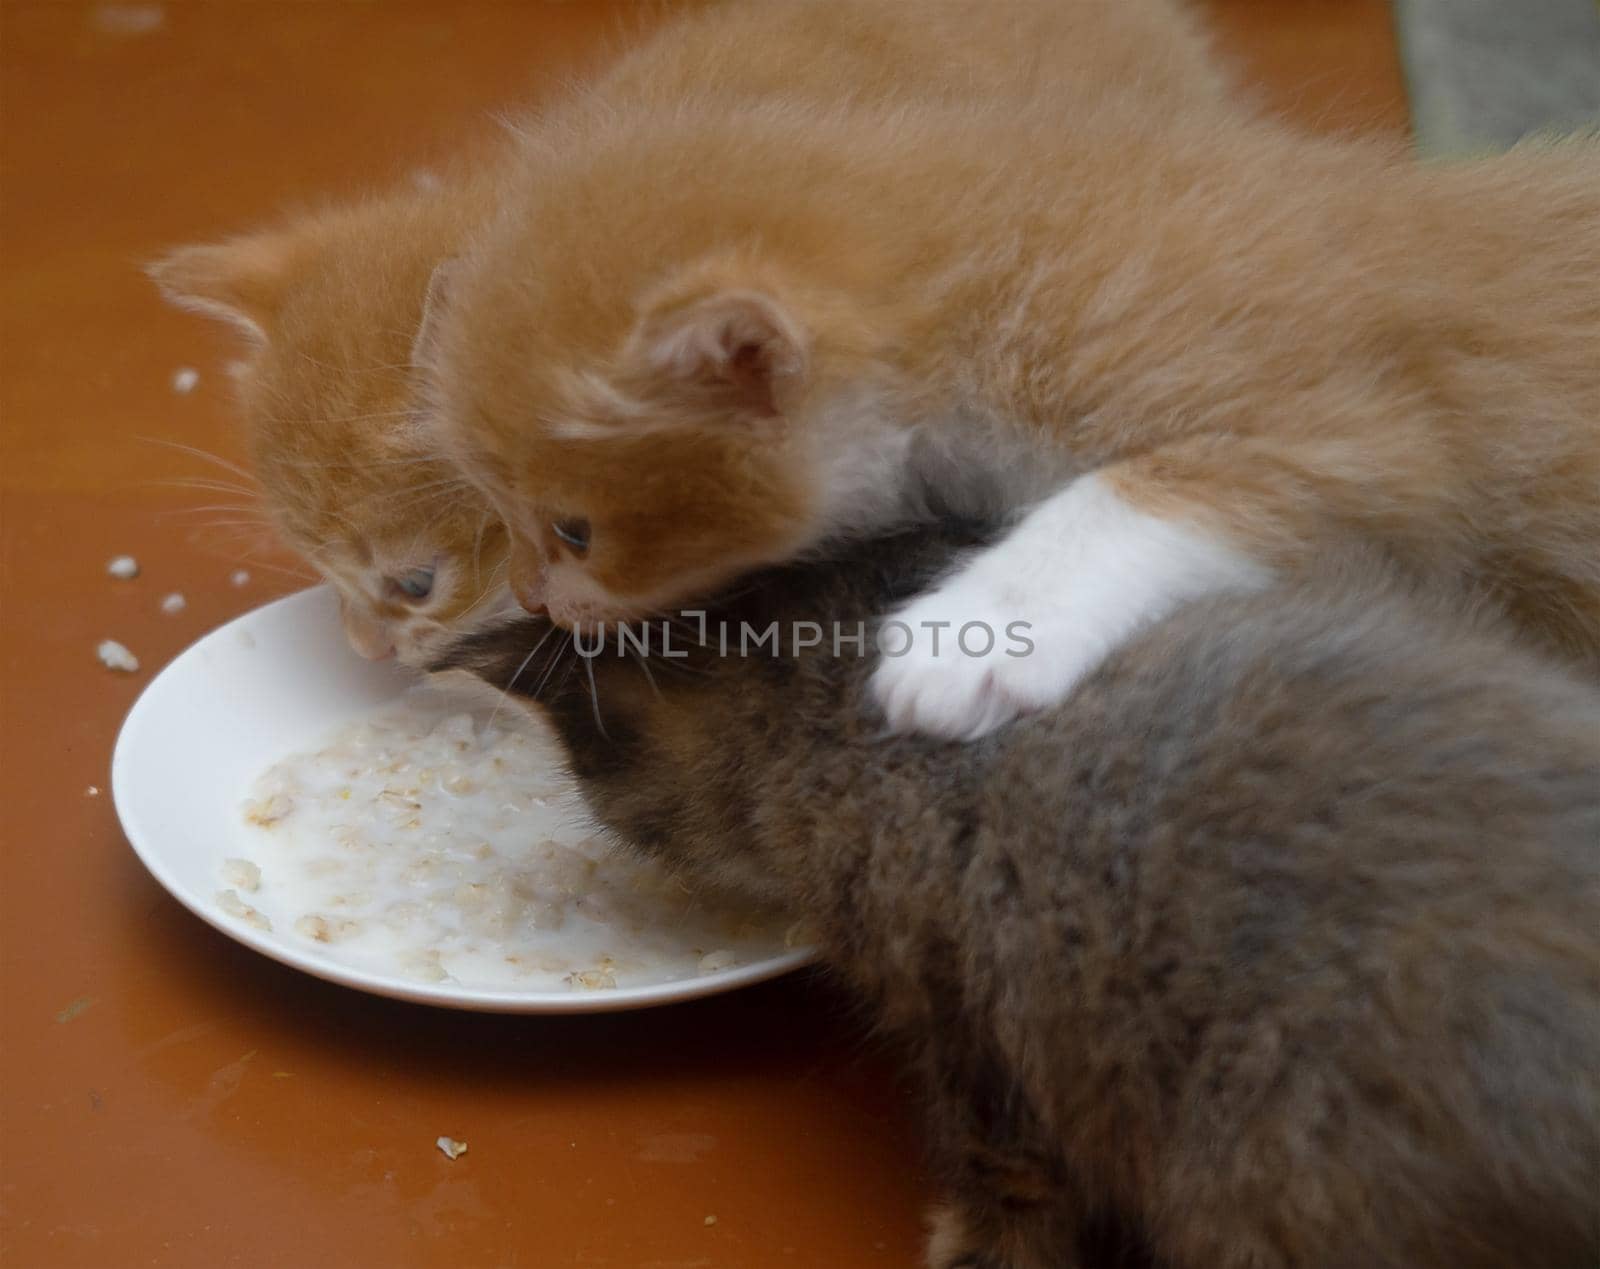 Three kittens eat food by rommma